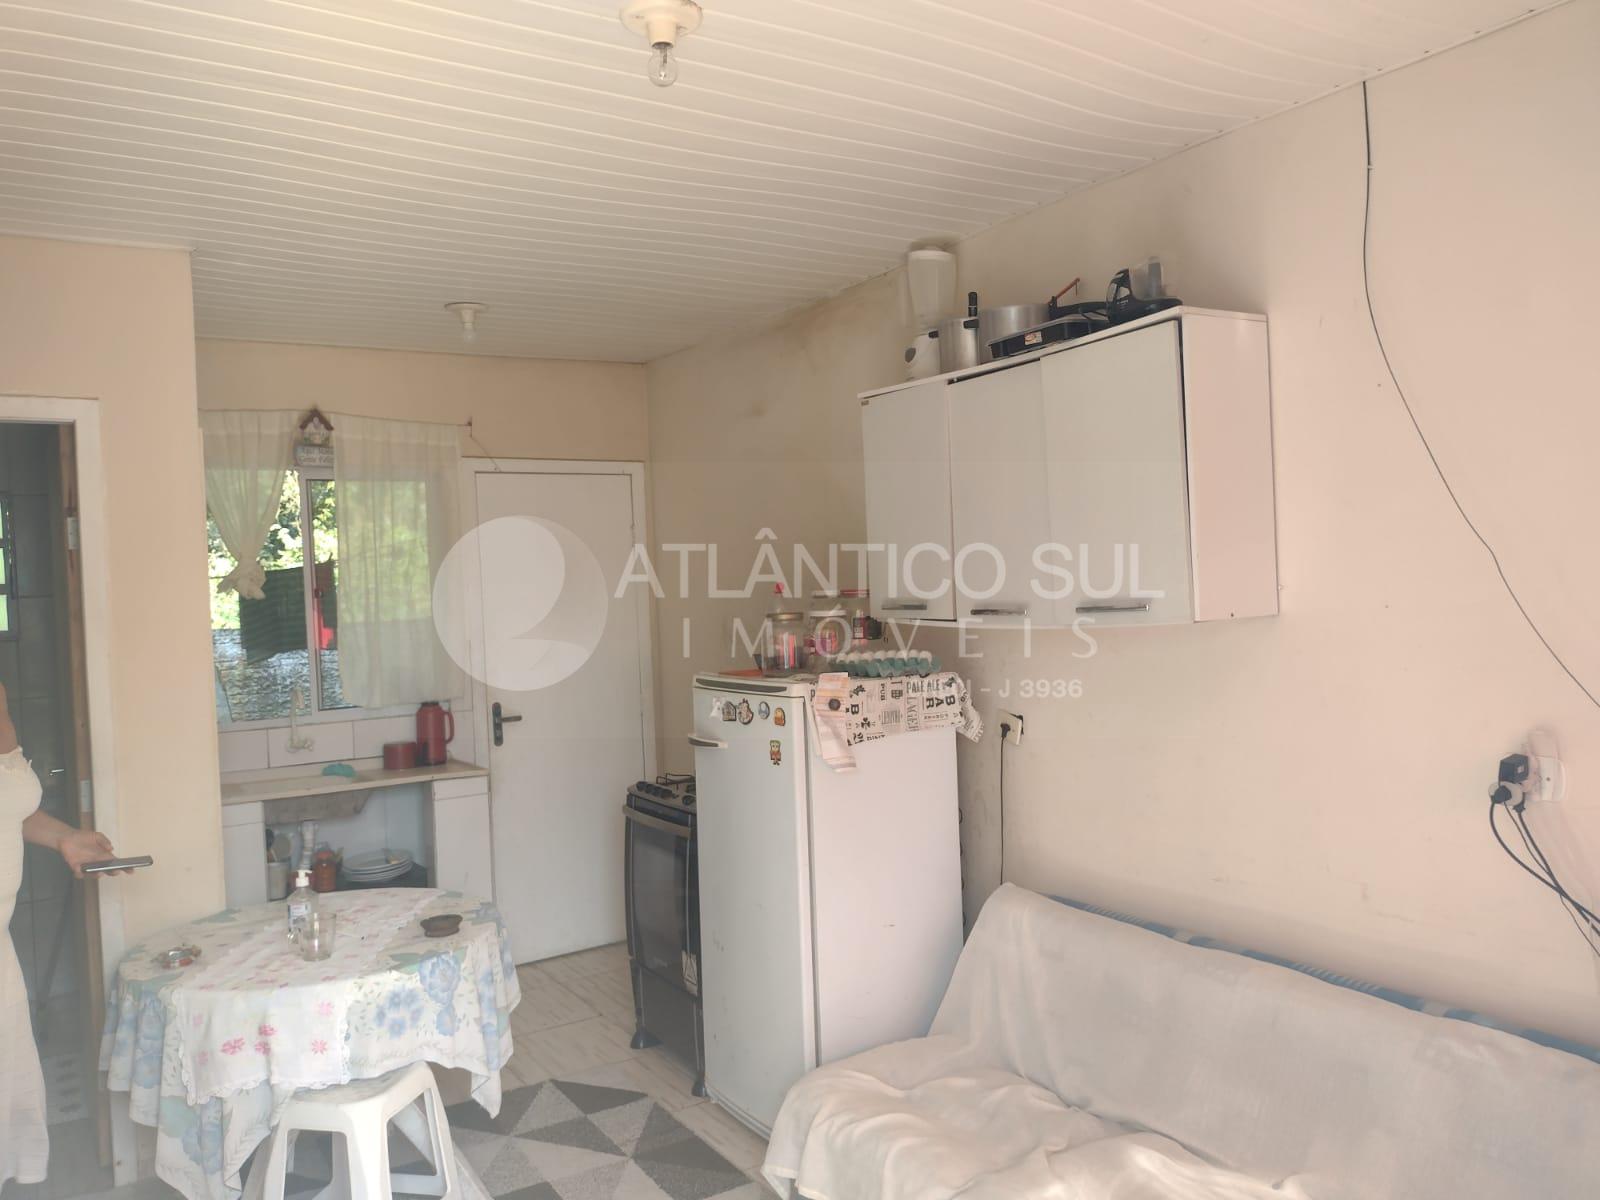 Casa à venda, PONTAL DO SUL, medindo 360m² de área total, PONT...